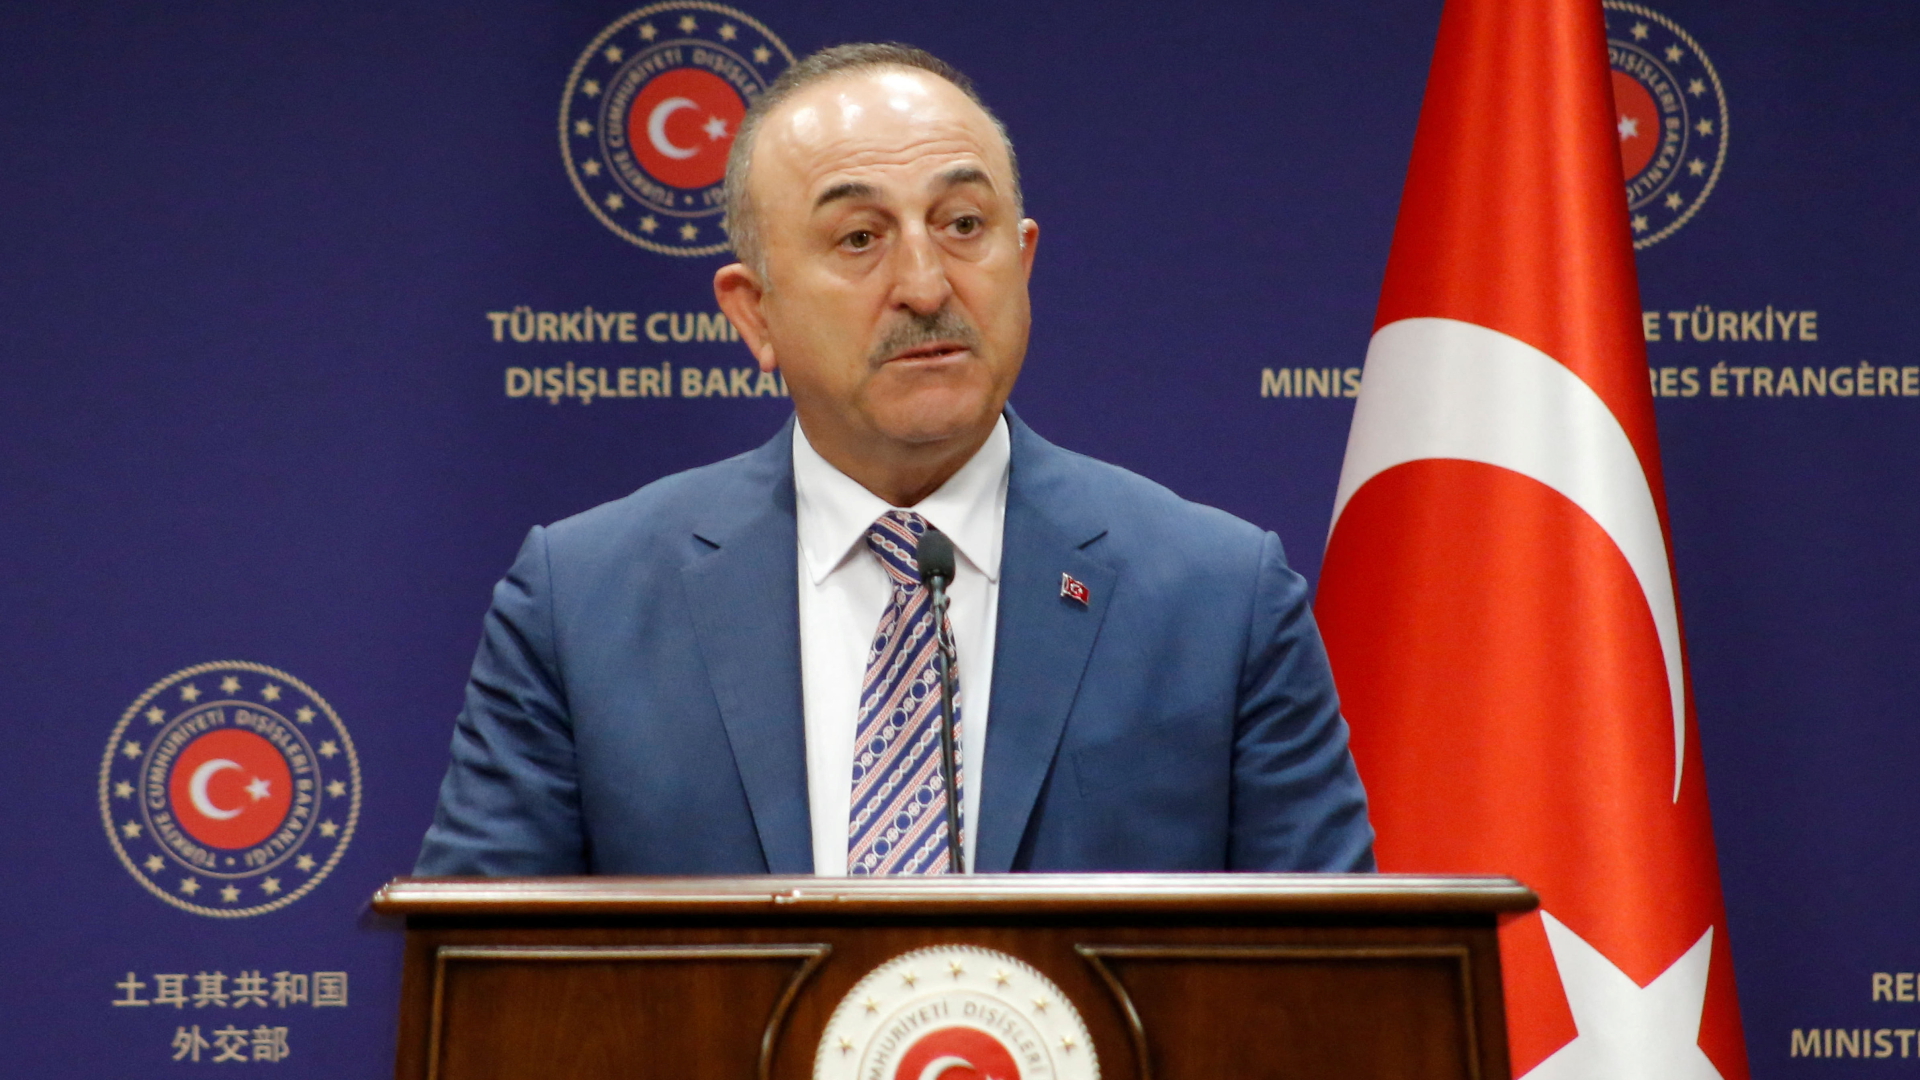 Nach Anschlagswarnungen: Türkei bestellt deutschen Botschafter ein